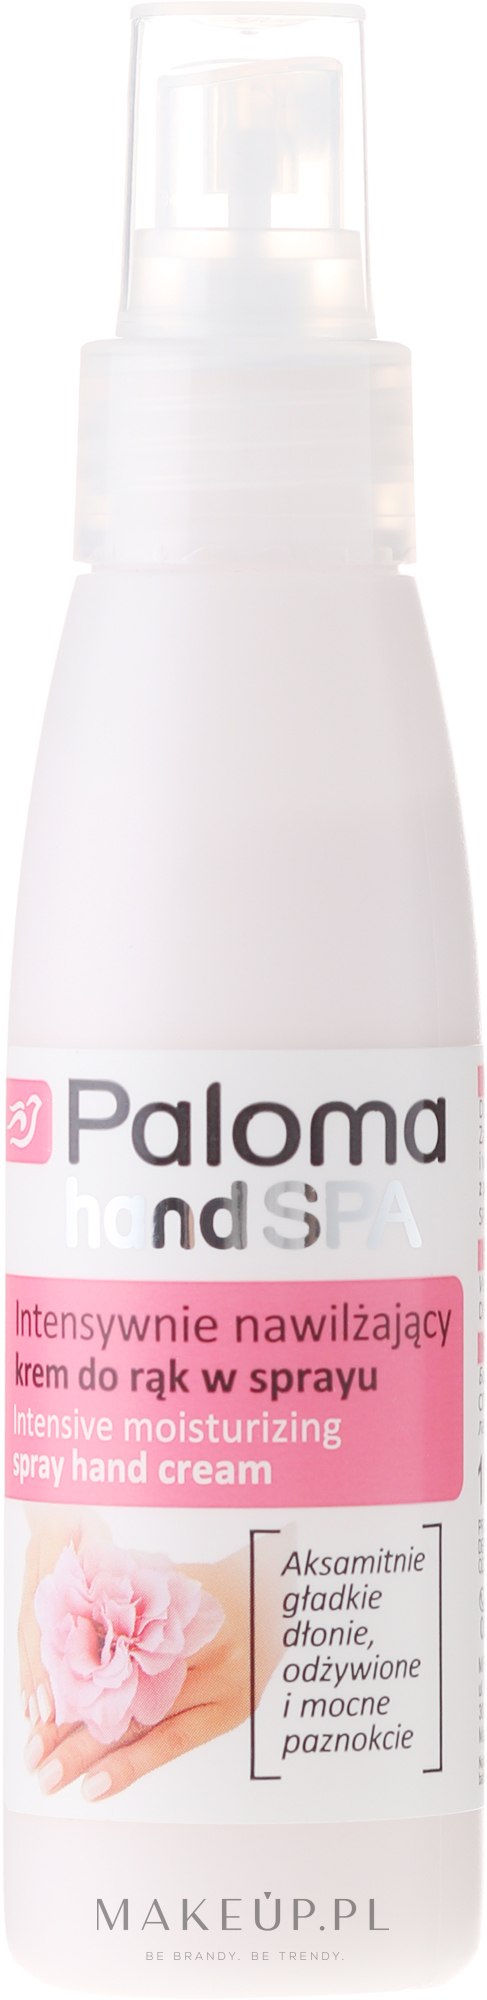 Intensywnie nawilżający krem do rąk w sprayu - Paloma Hand SPA — Zdjęcie 100 ml